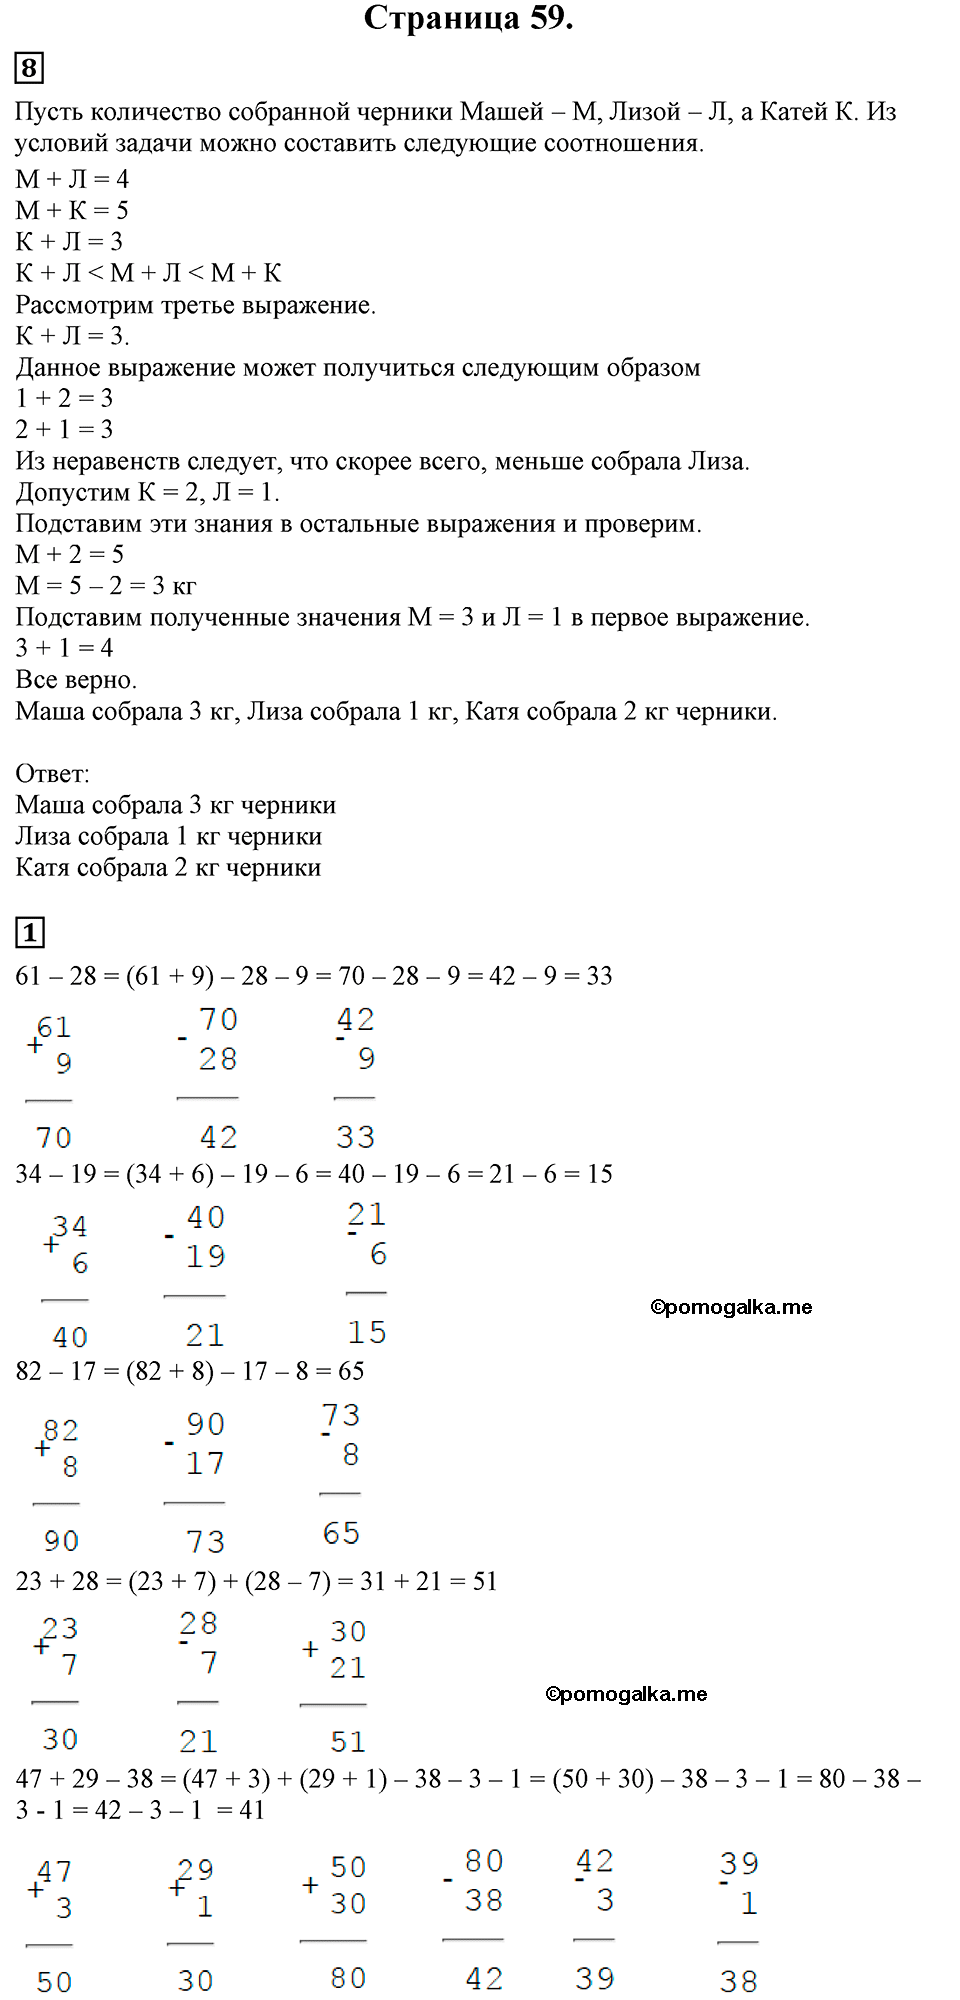 Страница №59 Часть 1 математика 3 класс Дорофеев